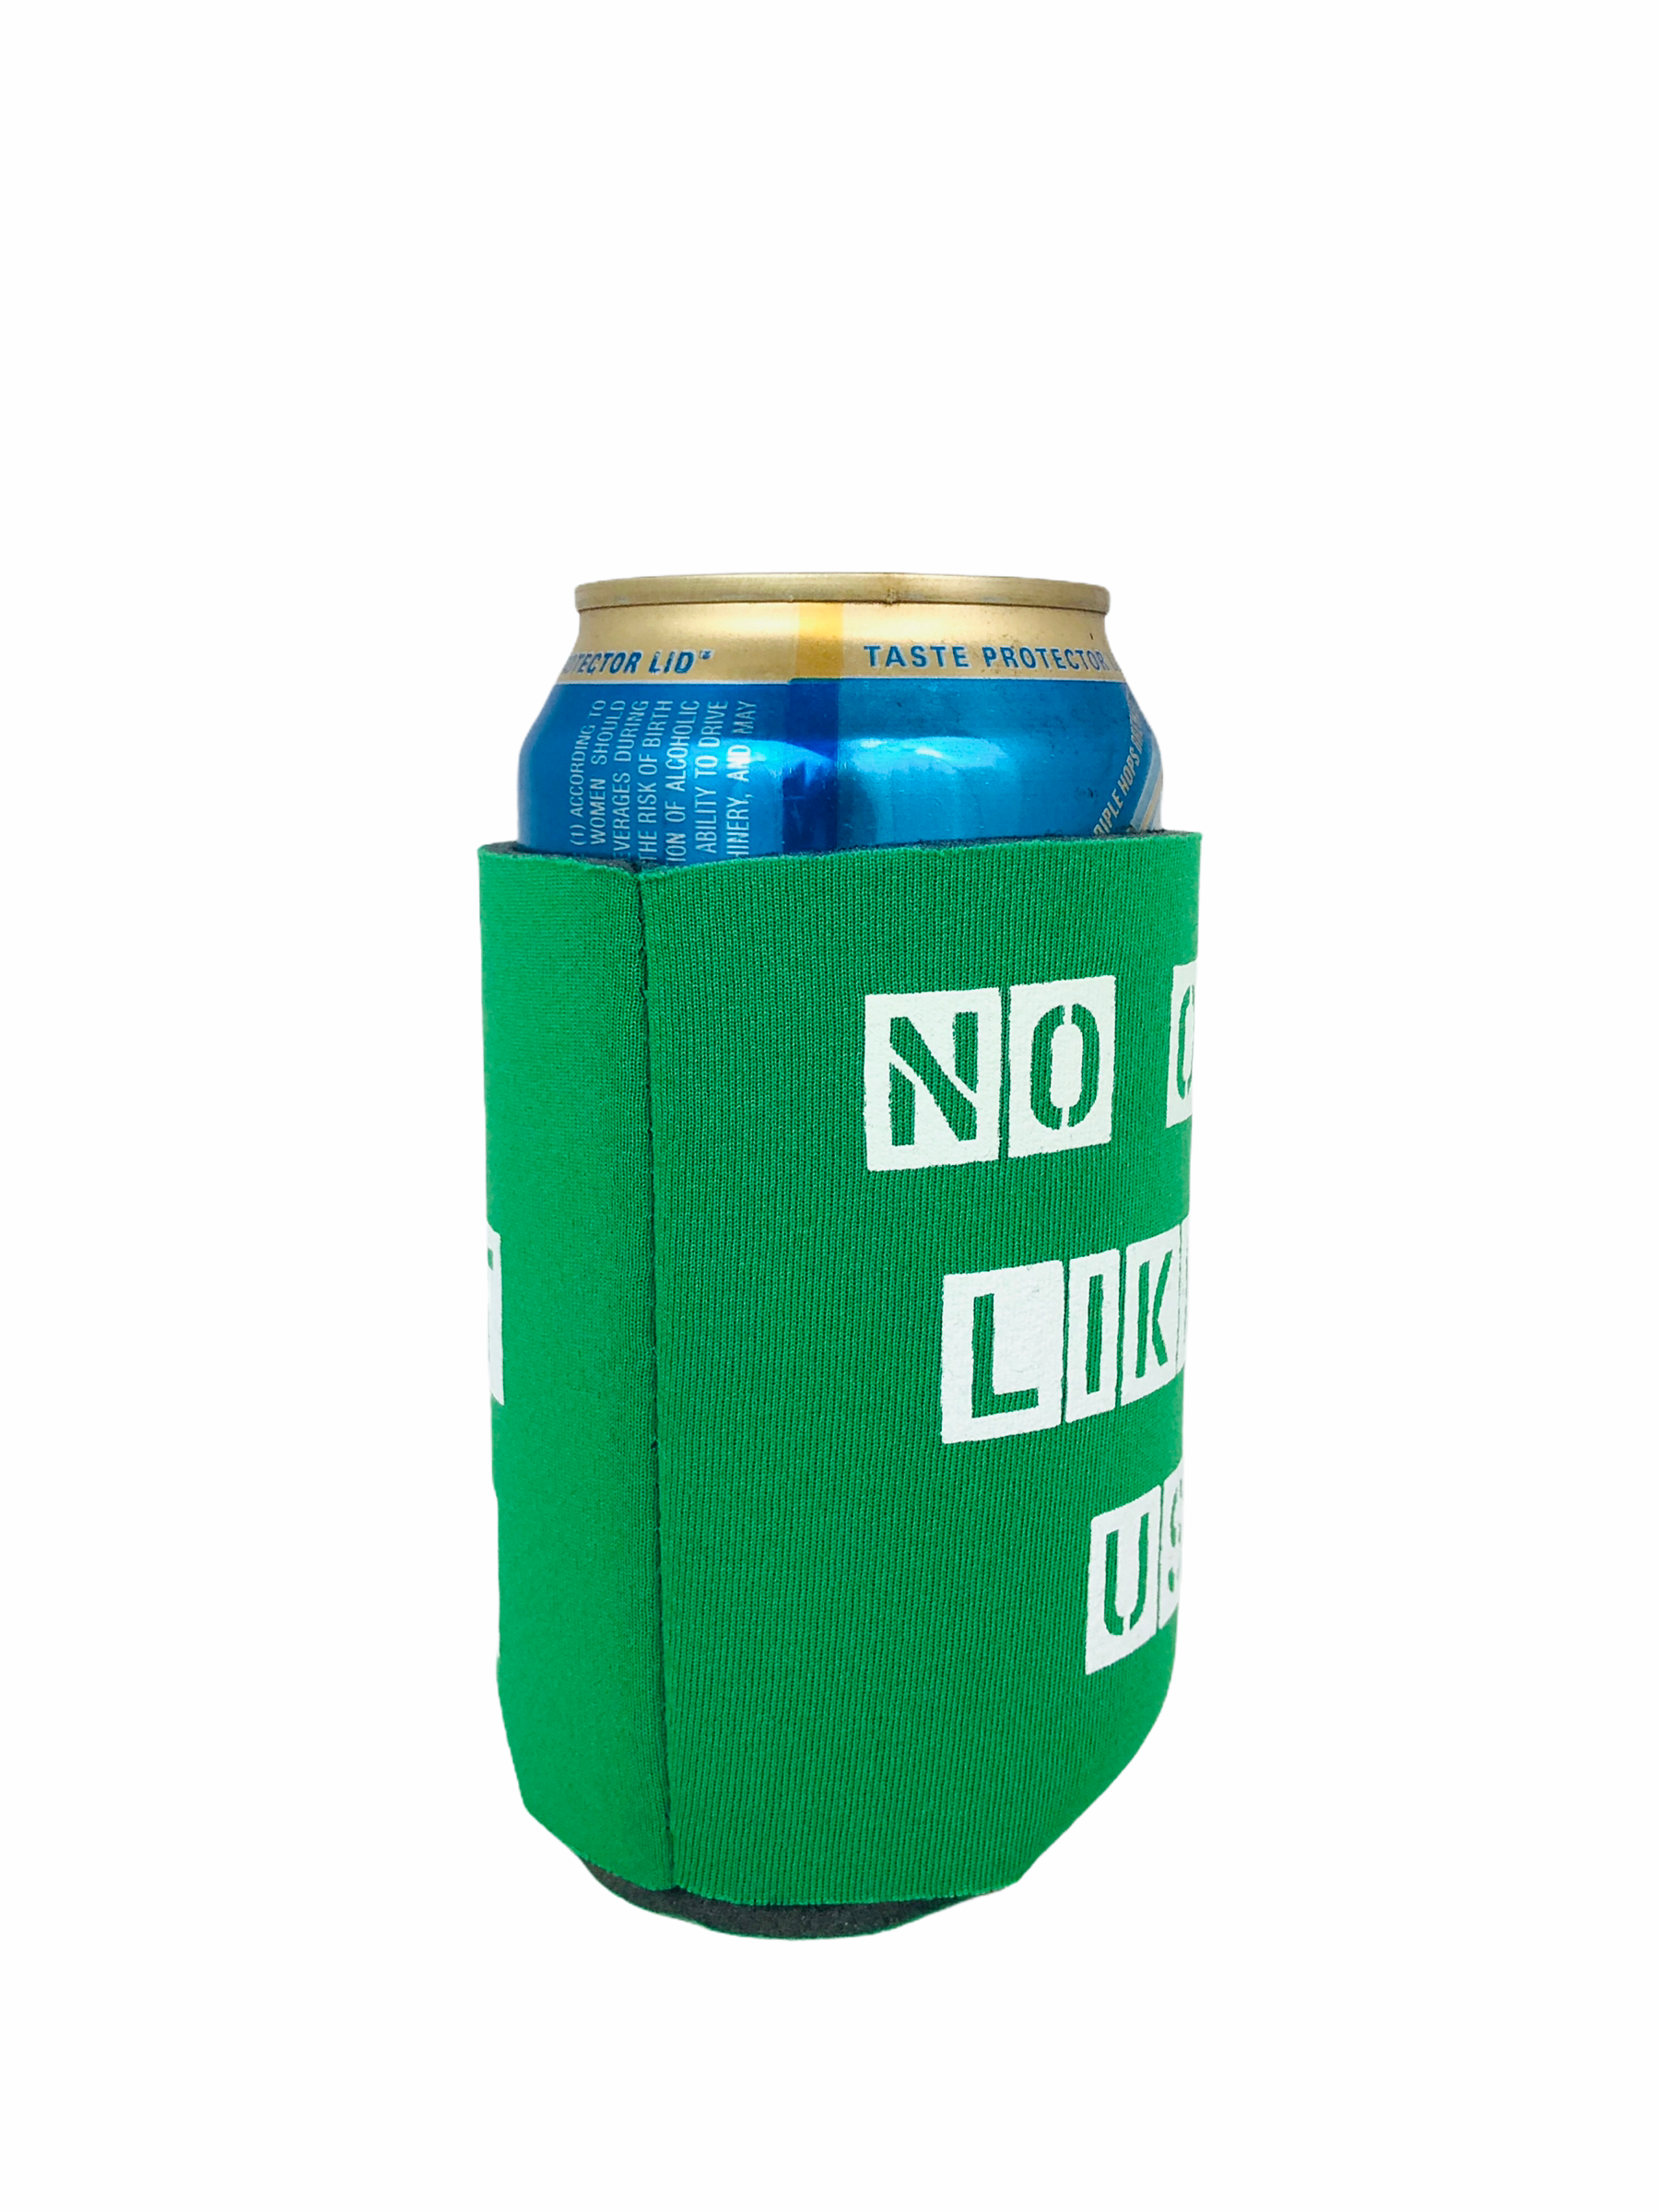 Dallas Cowboys koozie koozies beer soda holder cooler NFL